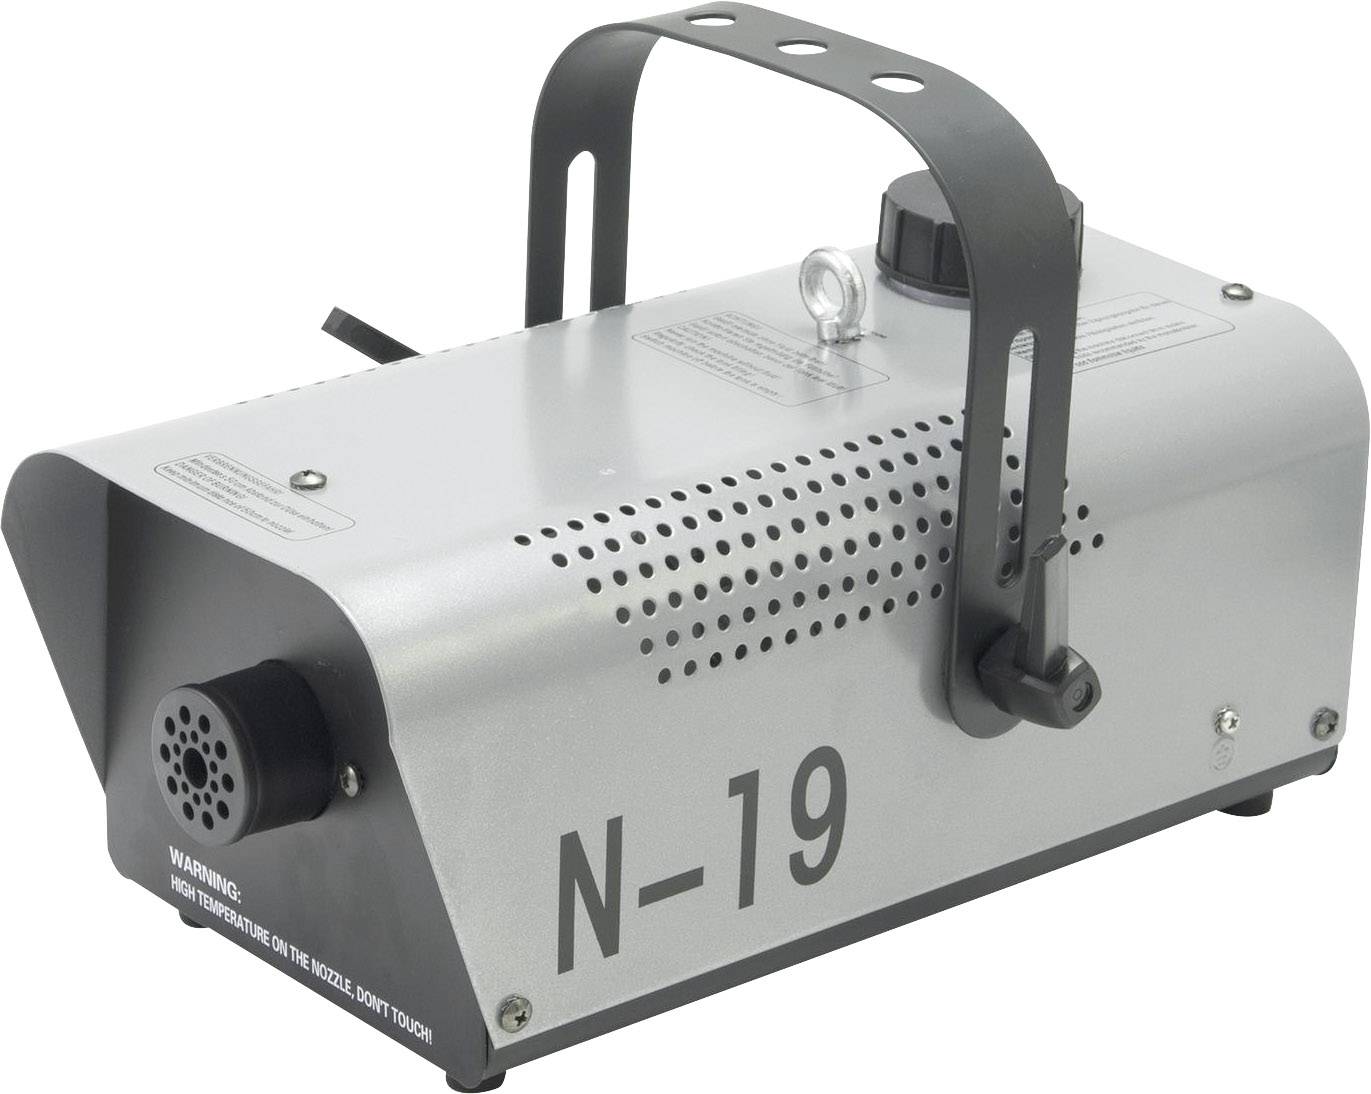 EUROLITE N-19 Nebelmaschine inkl. Befestigungsbügel, inkl. Kabelfernbedienung